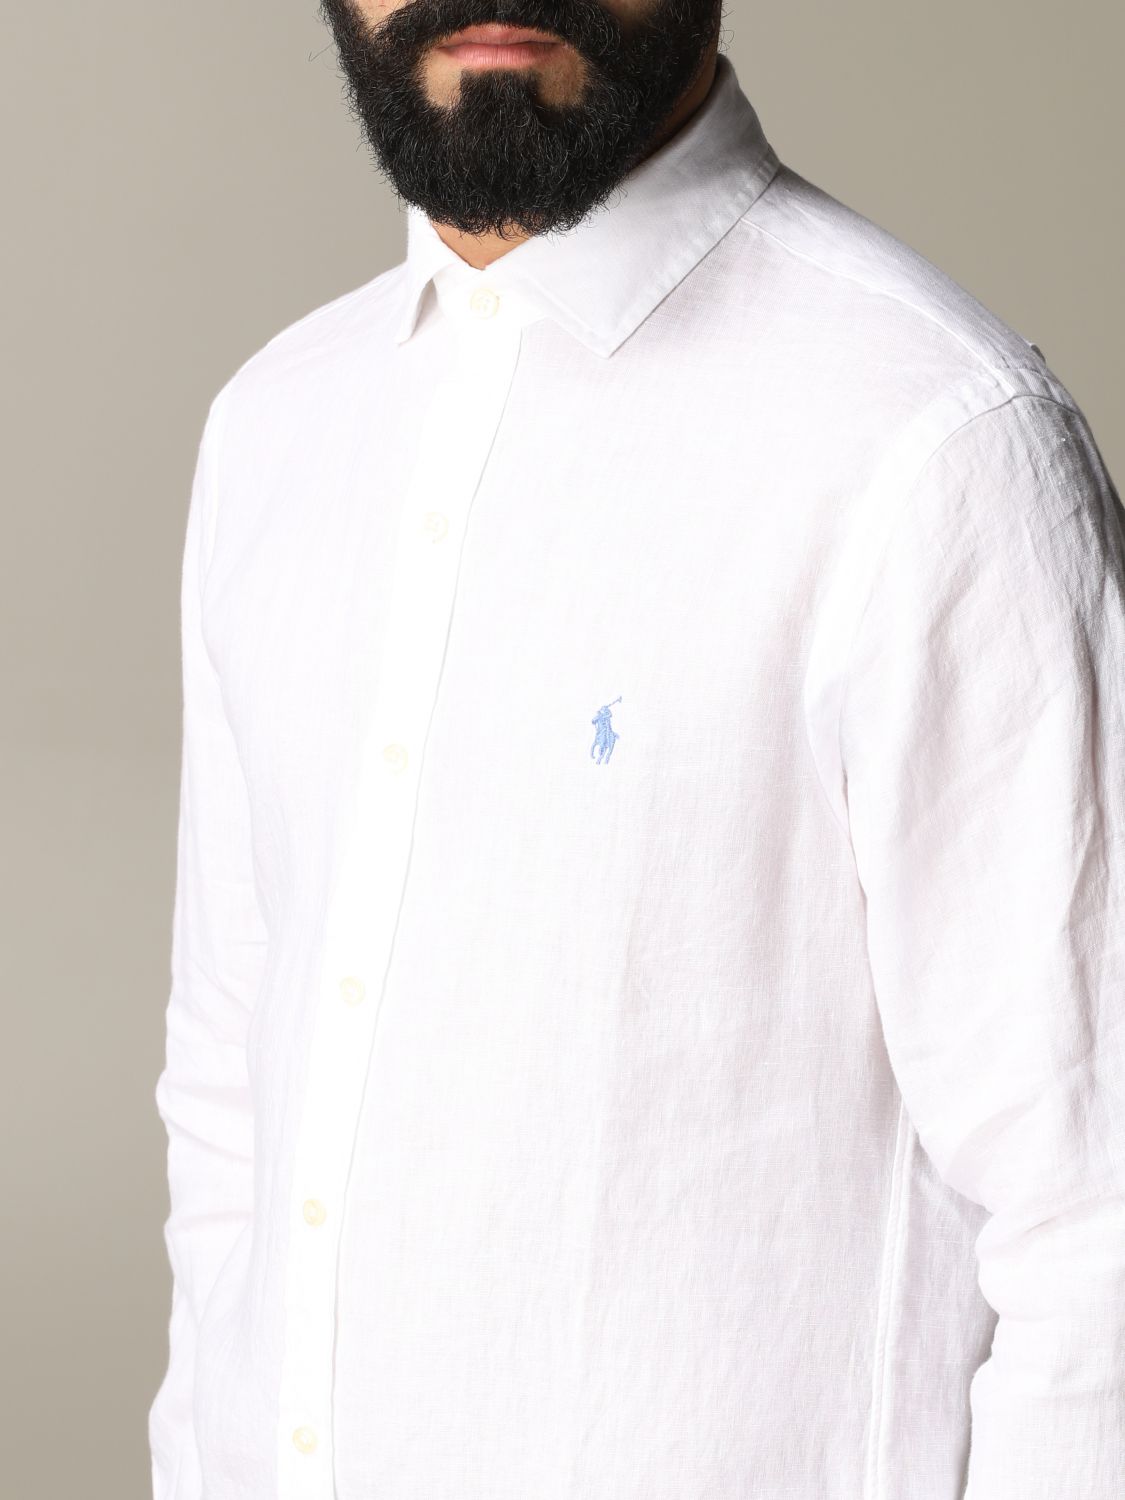 Shirt Polo Ralph Lauren: Polo Ralph Lauren shirt for men white 5